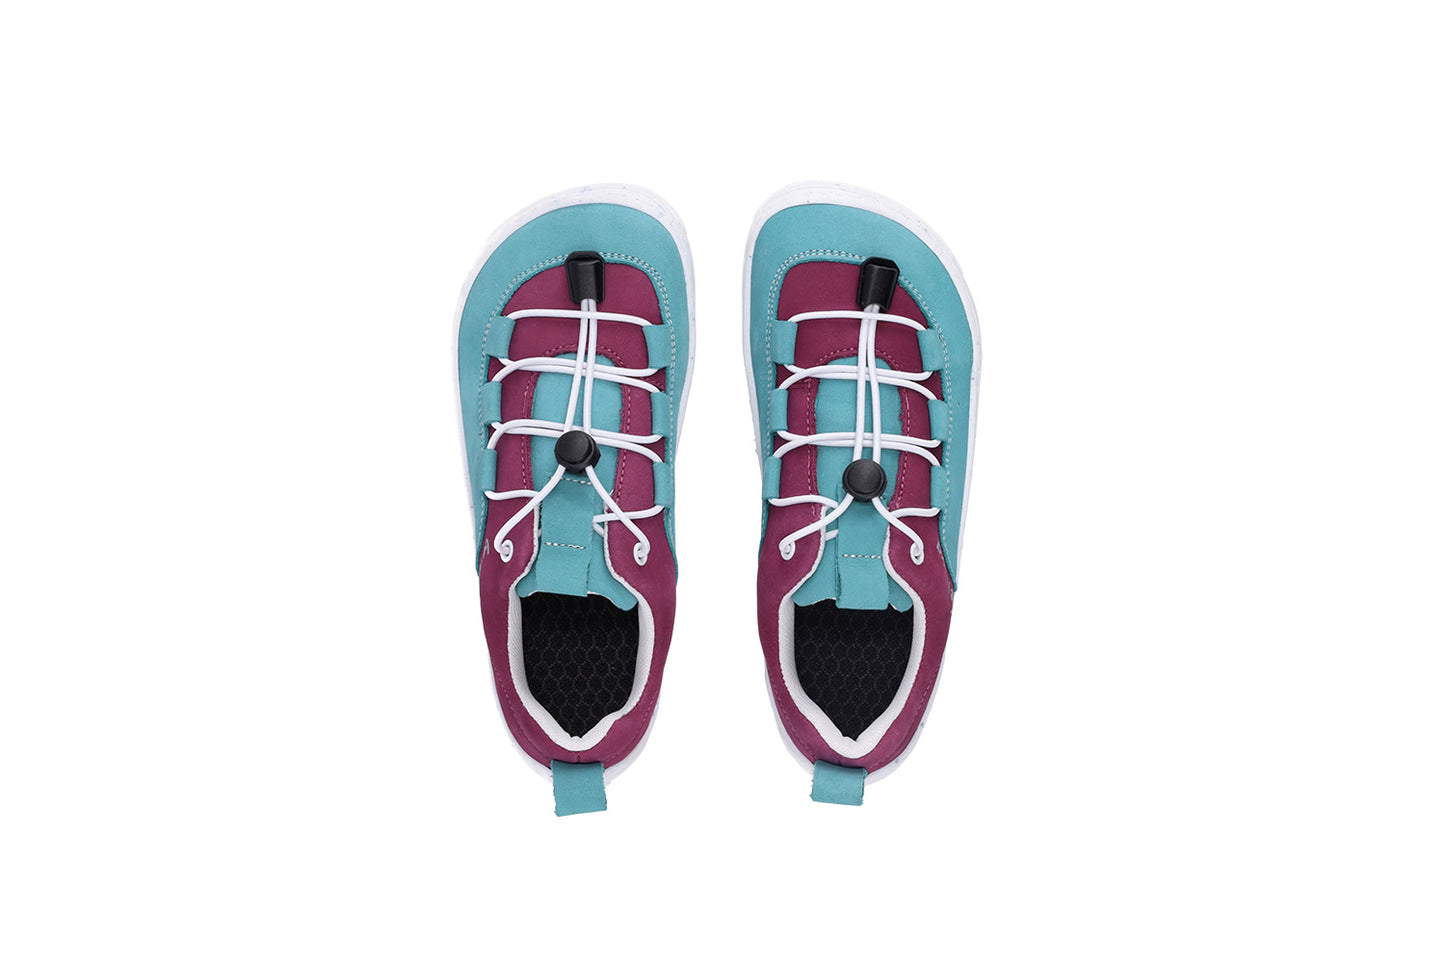 Be Lenka Xplorer Kids' Barefoot Sneakers Light Teal & Plum